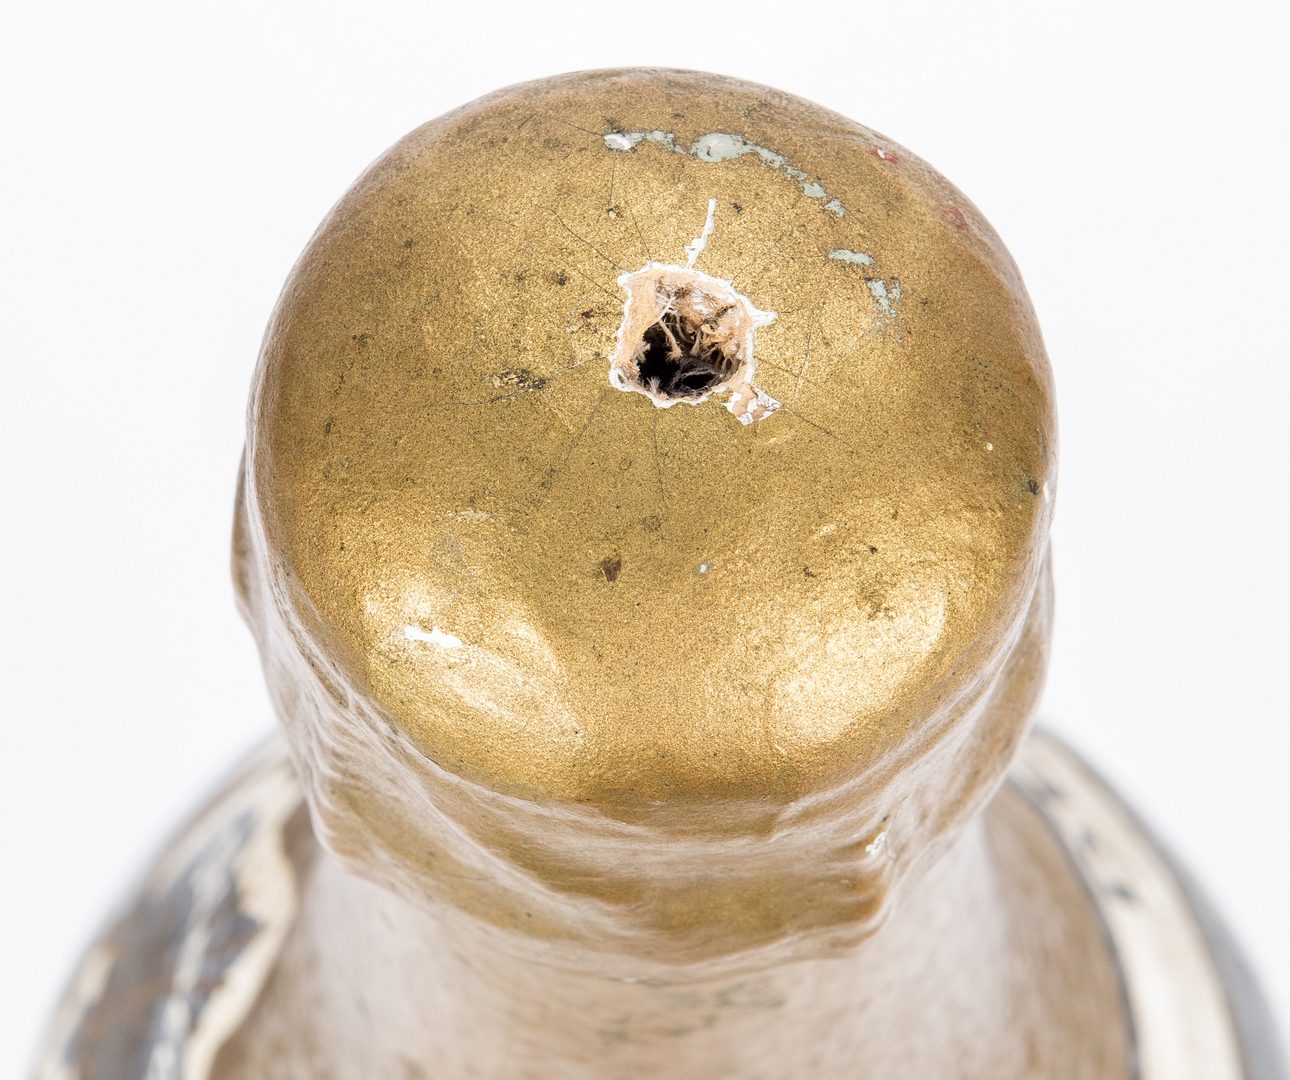 Lot 418: Vintage Champagne advertising bottle